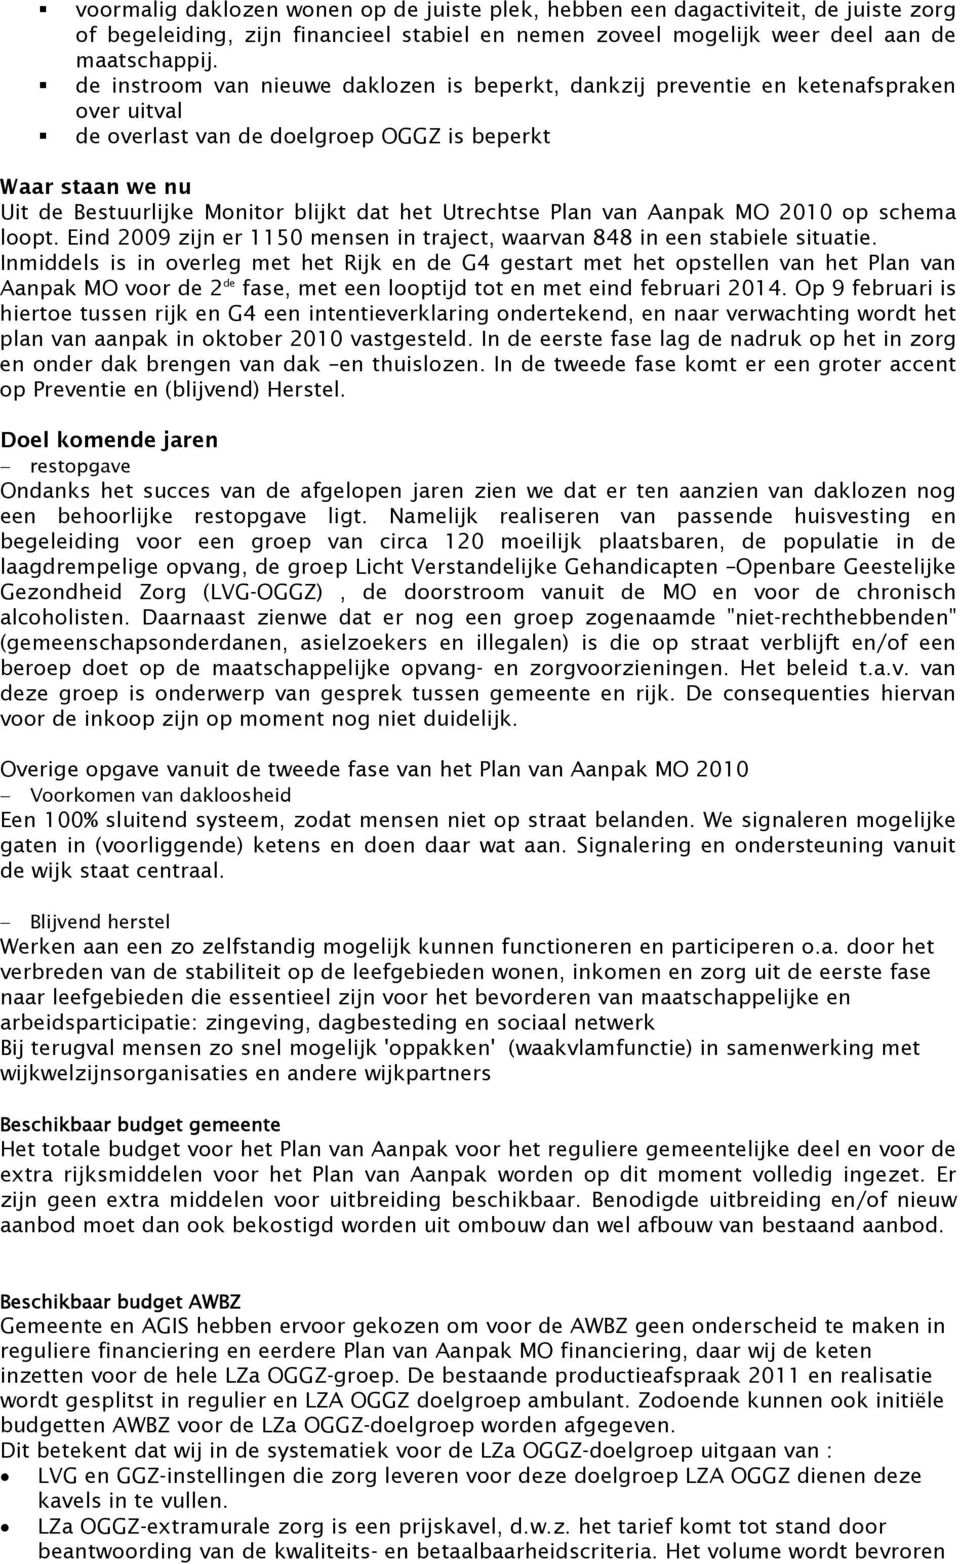 Utrechtse Plan van Aanpak MO 2010 op schema loopt. Eind 2009 zijn er 1150 mensen in traject, waarvan 848 in een stabiele situatie.